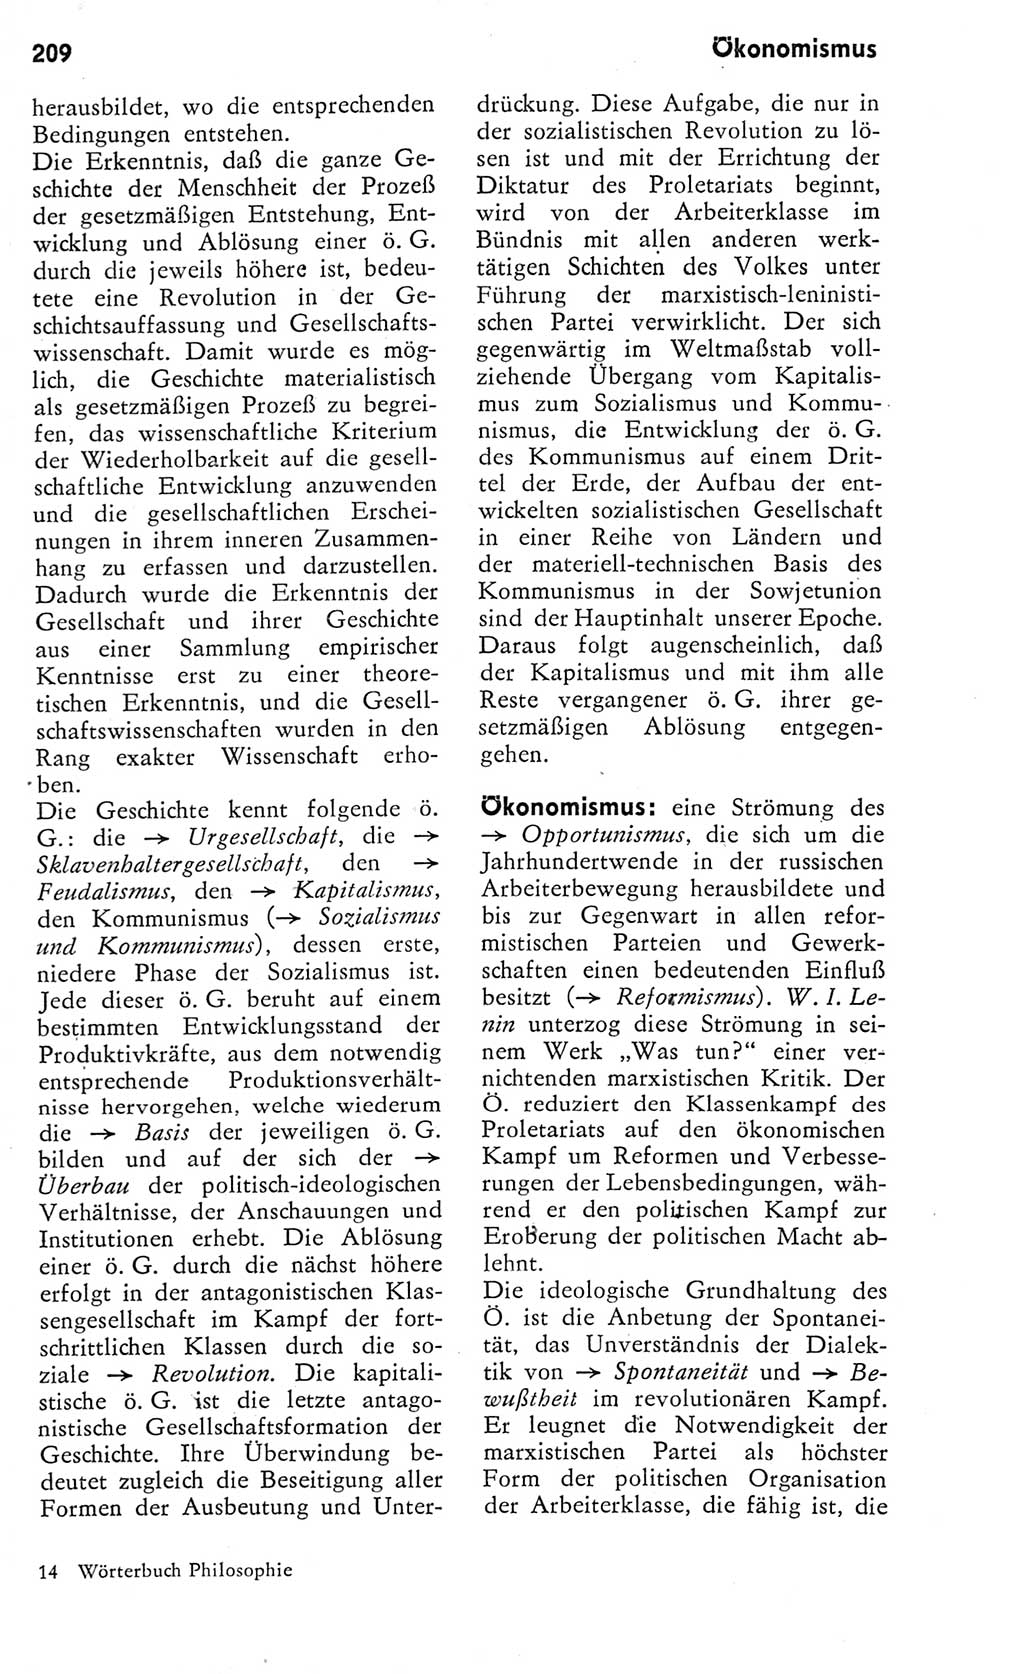 Kleines Wörterbuch der marxistisch-leninistischen Philosophie [Deutsche Demokratische Republik (DDR)] 1975, Seite 209 (Kl. Wb. ML Phil. DDR 1975, S. 209)